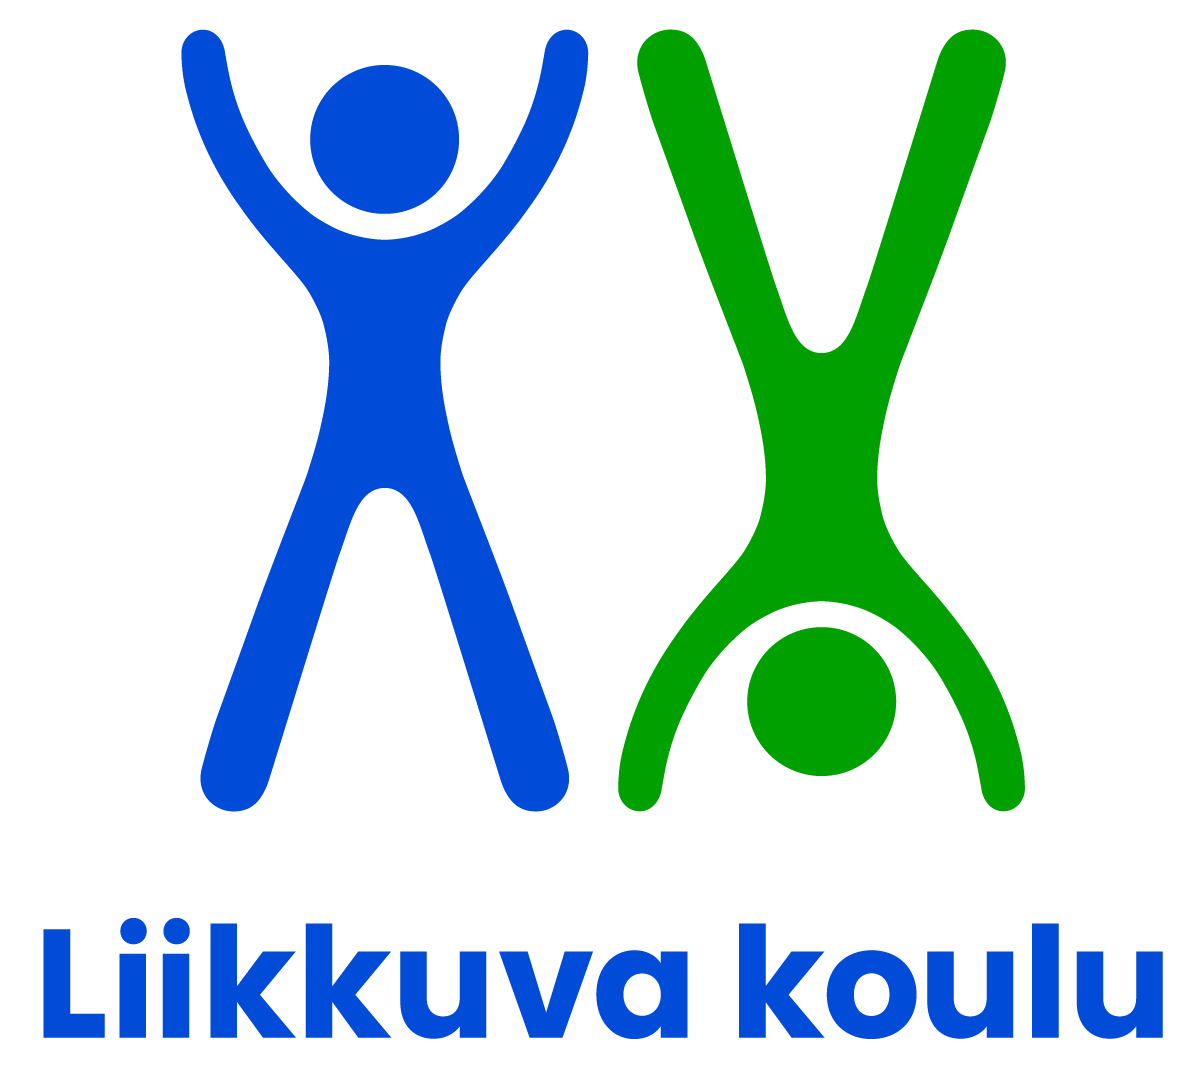 Liikkuva koulu -ohjelman logo.